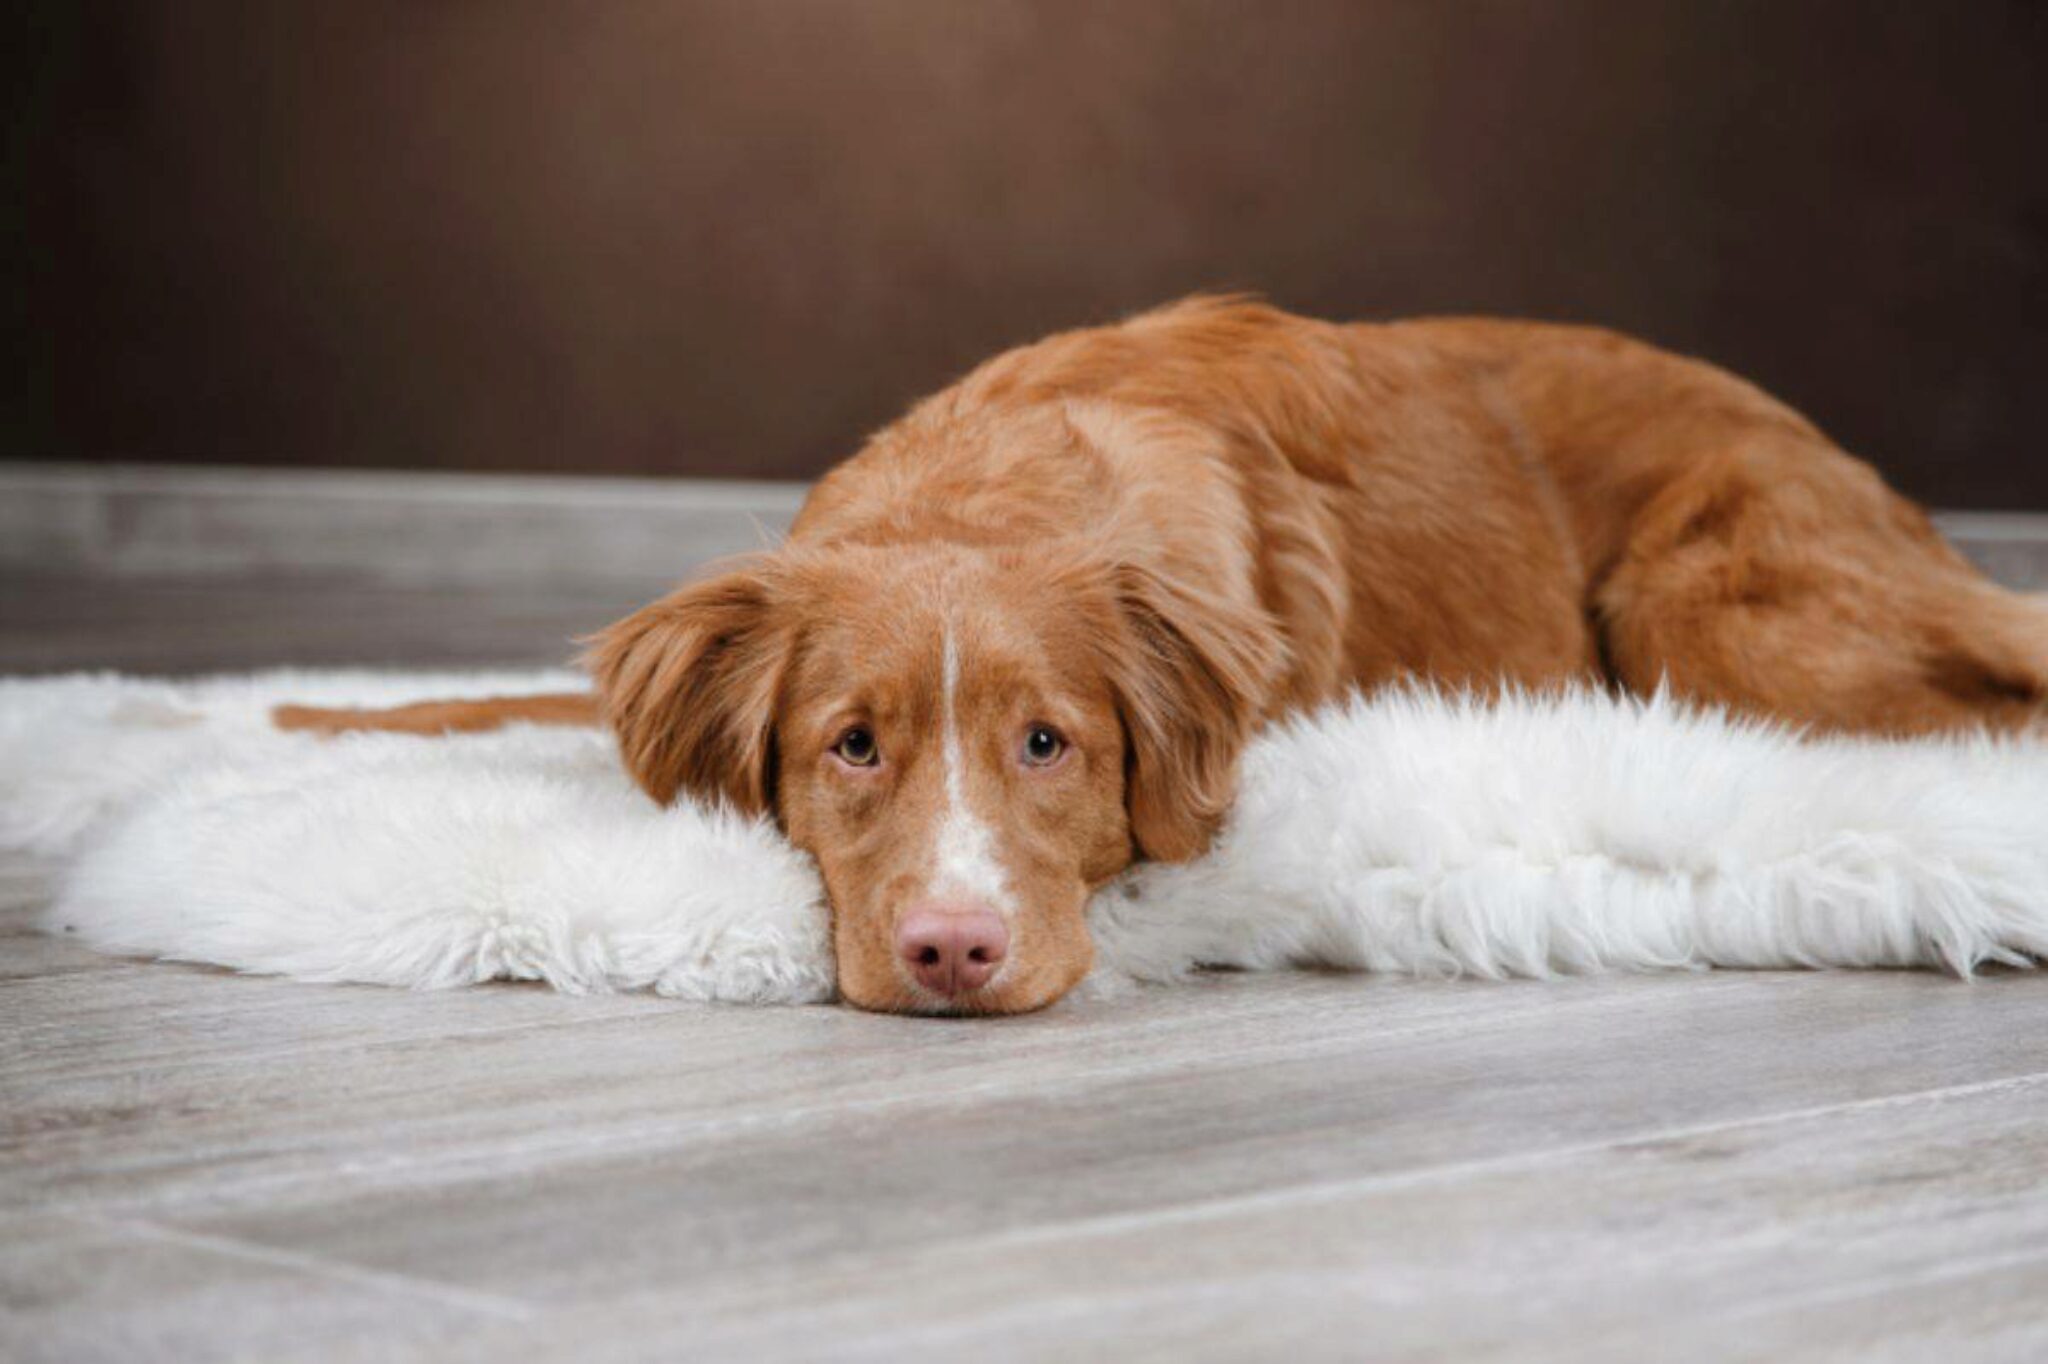 Perché Il Mio Cane Sembra Sempre Triste? 7 Motivi Per Cui Il Tuo Cane Sembra Triste + 3 Consigli